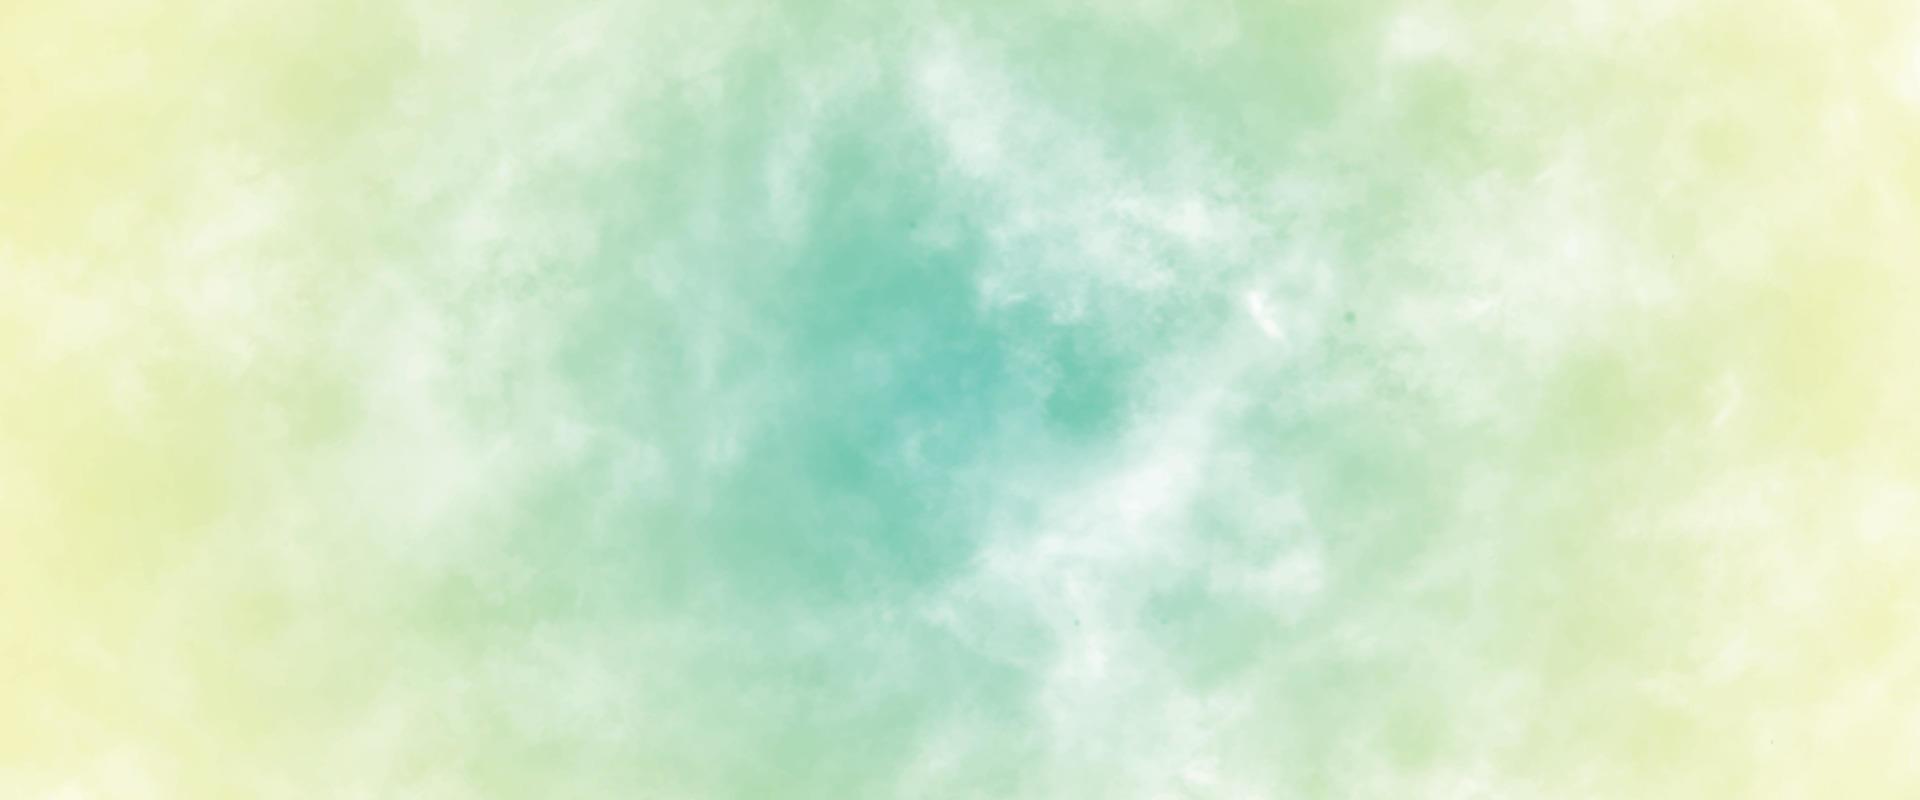 peinture de fond aquarelle verte abstraite, conception d'été ou de printemps vert foncé et jaune. doux brouillard flou ou brume dans le ciel de la lumière du soleil. fond avec texture grunge marbrée et design splash couleur vecteur